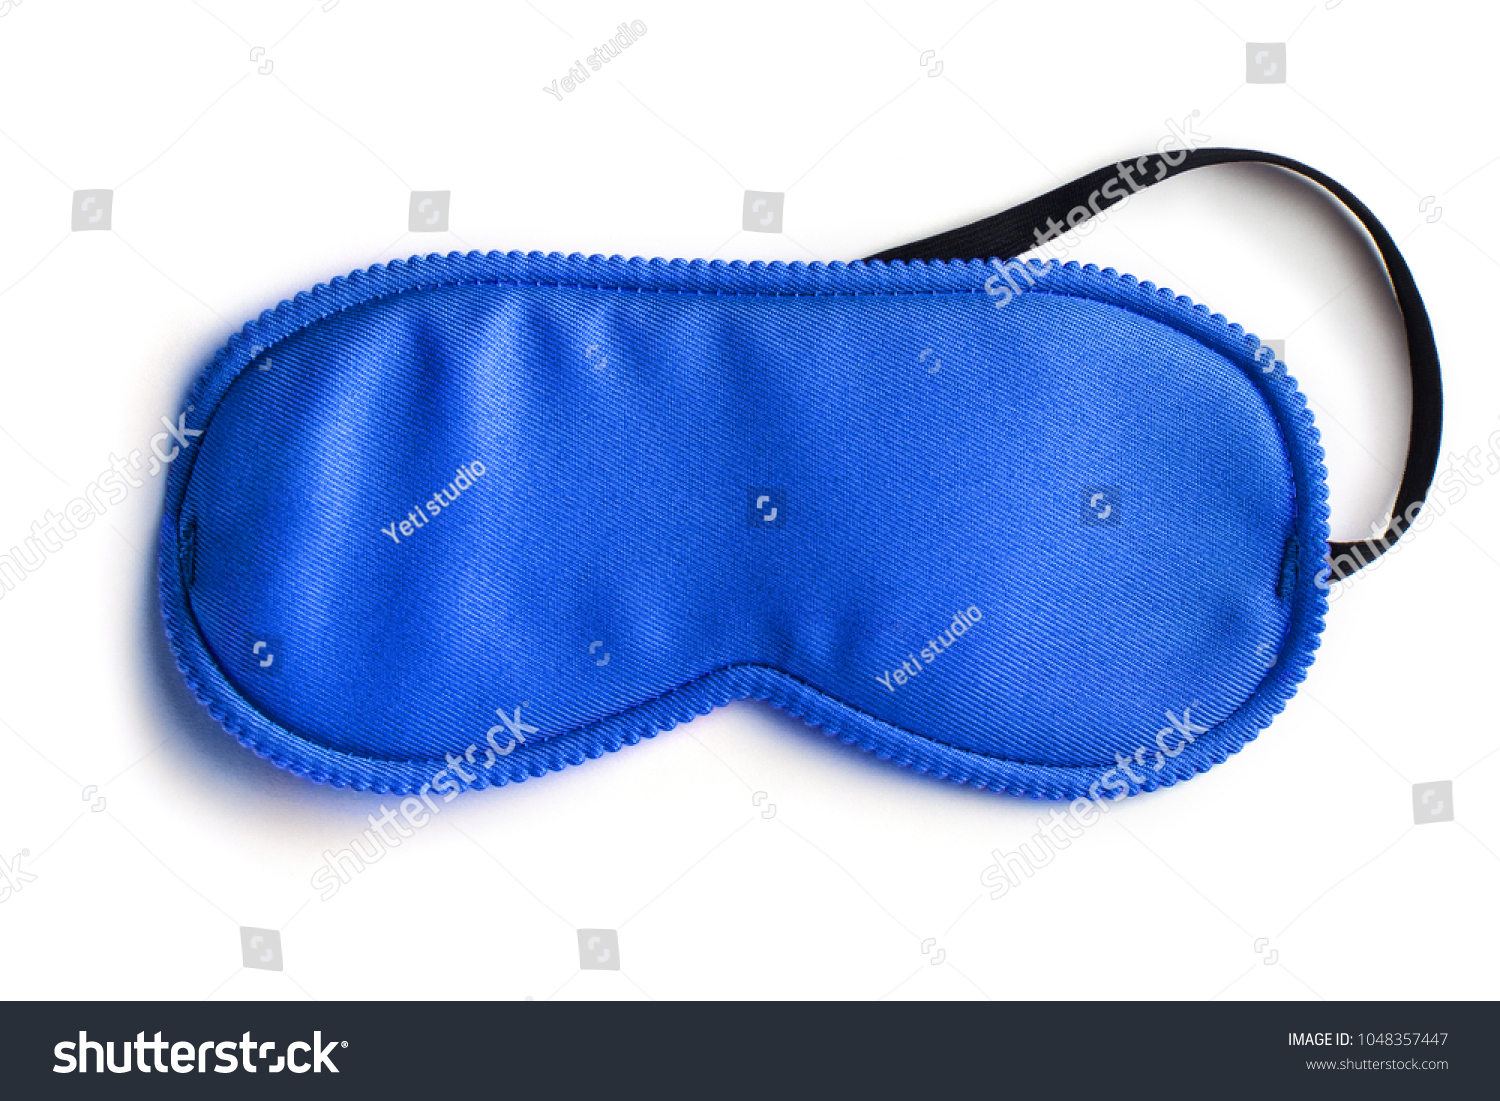 Blue sleeping eye mask, isolated on white background #1048357447